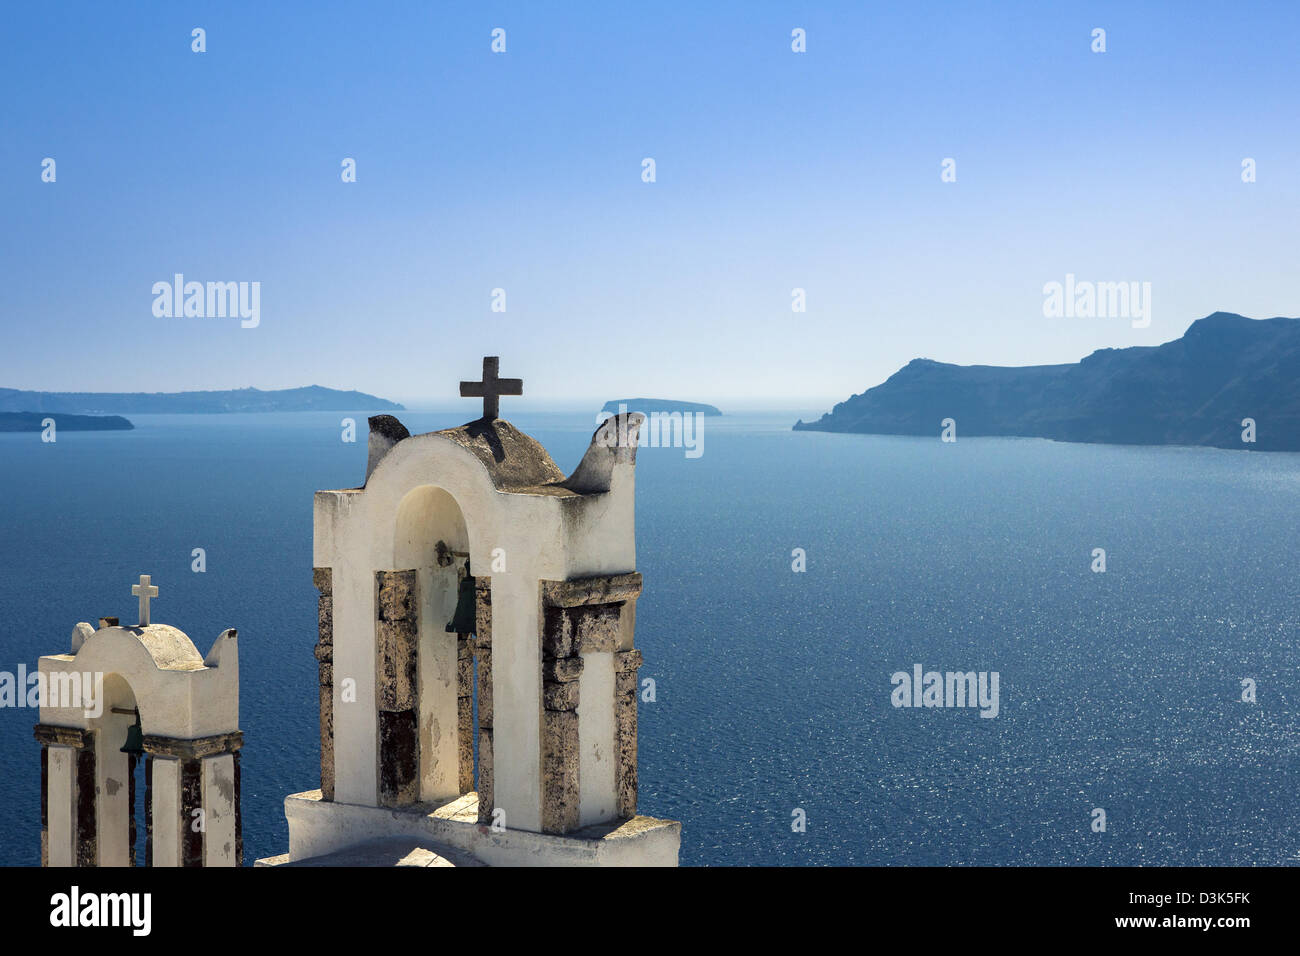 Dos campanarios de una iglesia mirando el caldra de Santorini. Foto de stock